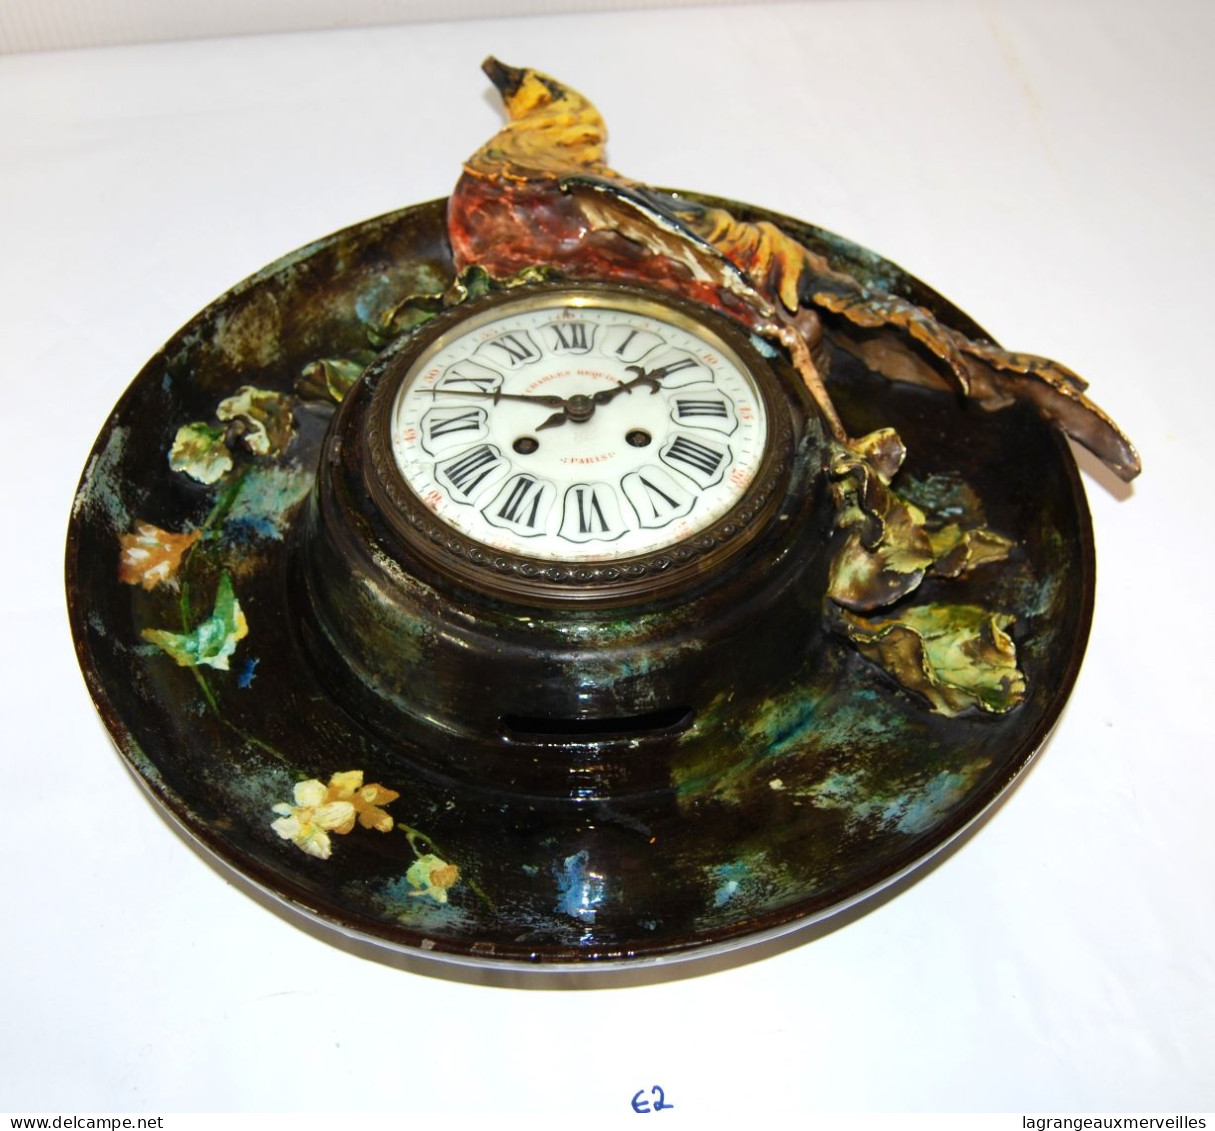 E2 Exceptionnelle horloge - Paris - Charles Requier - France - Baroque Rococco - Pièce rare